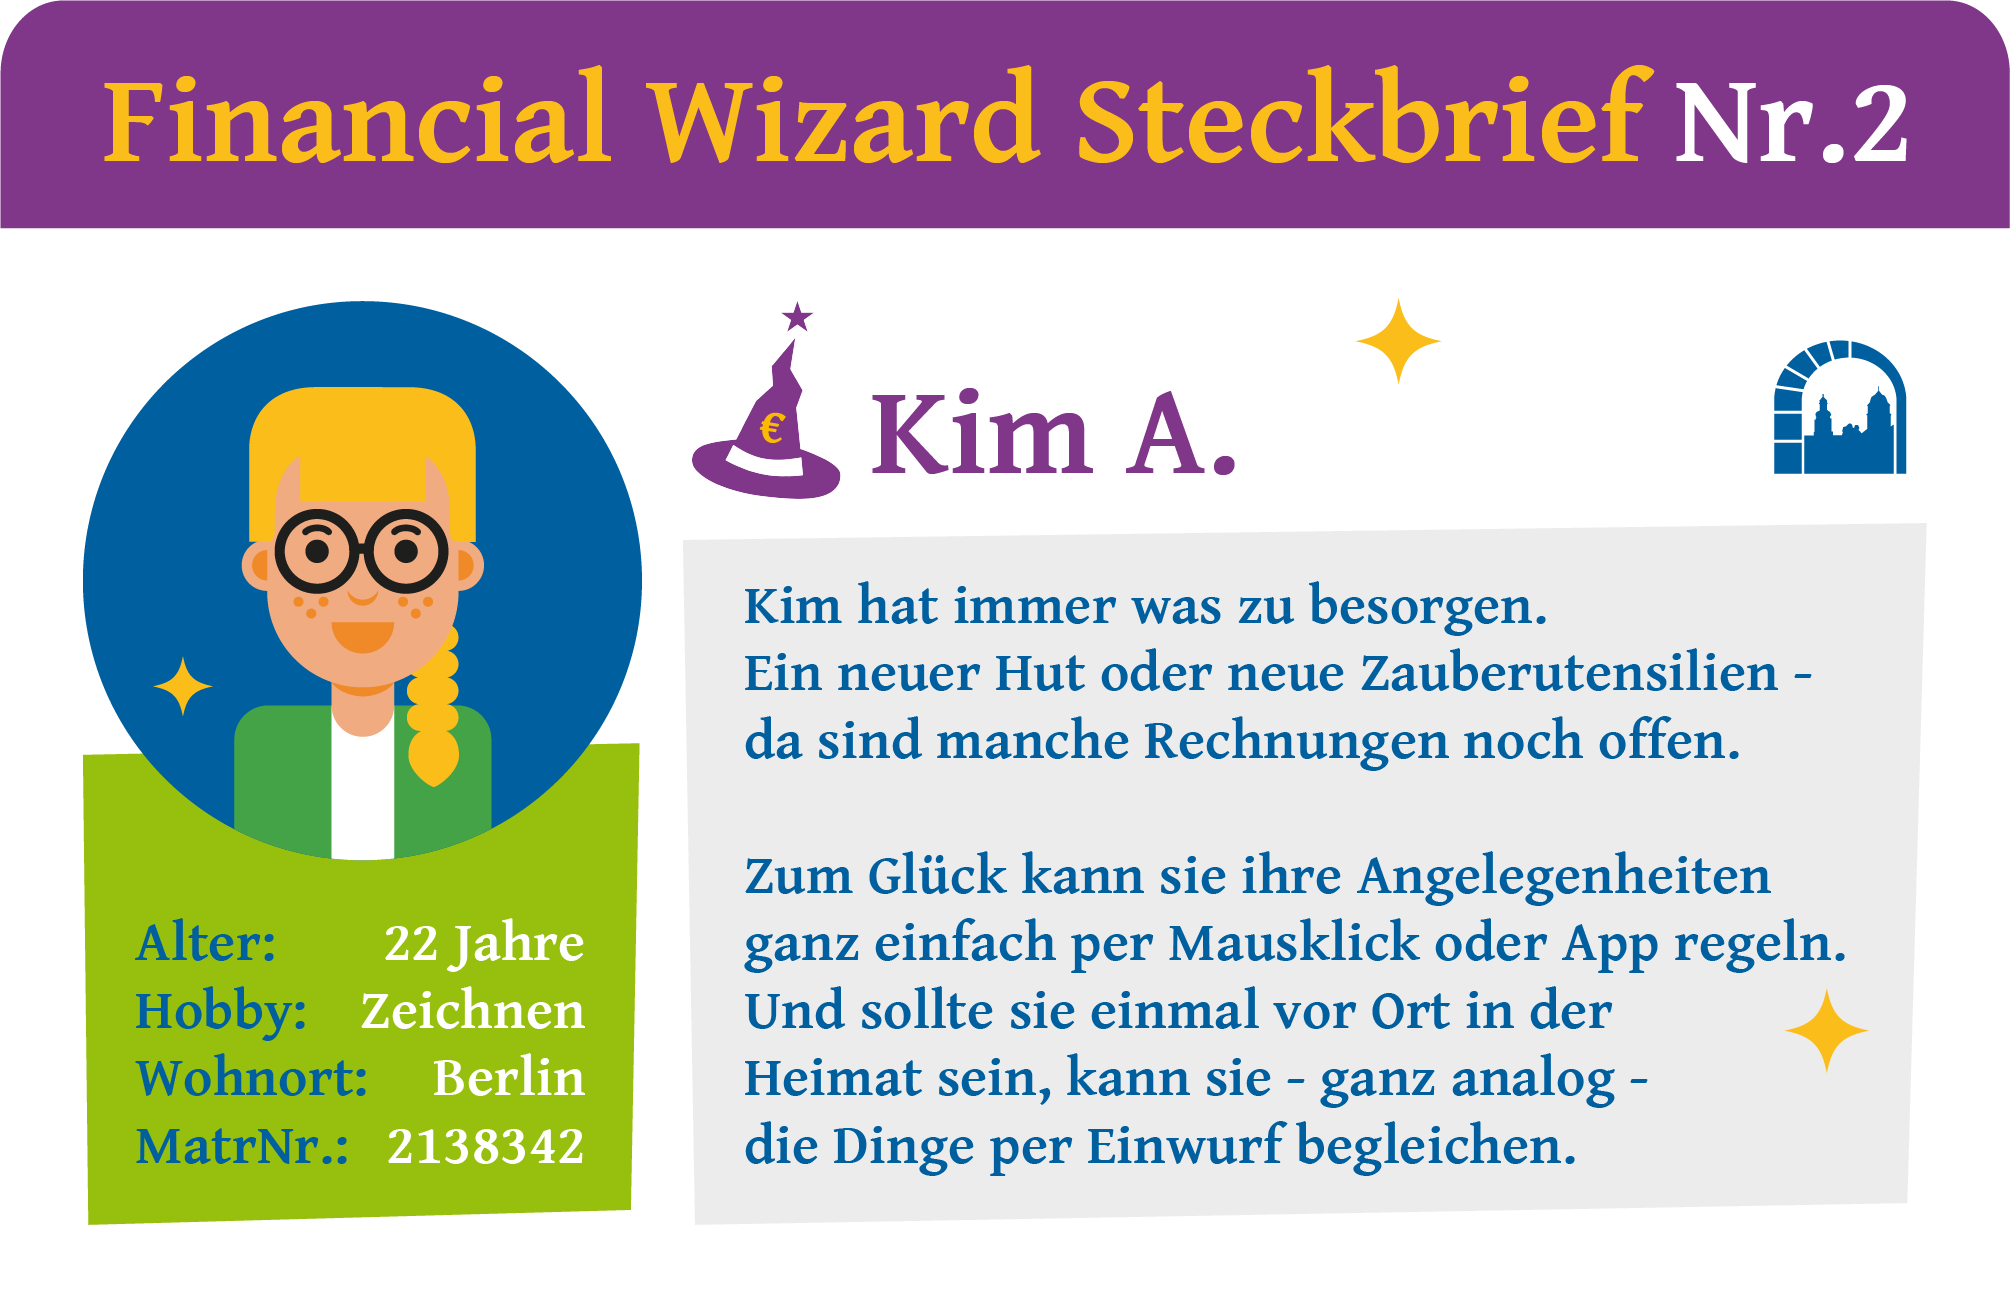 Steckbrief Nr. 2 zur Financial Wizard Challenge 4